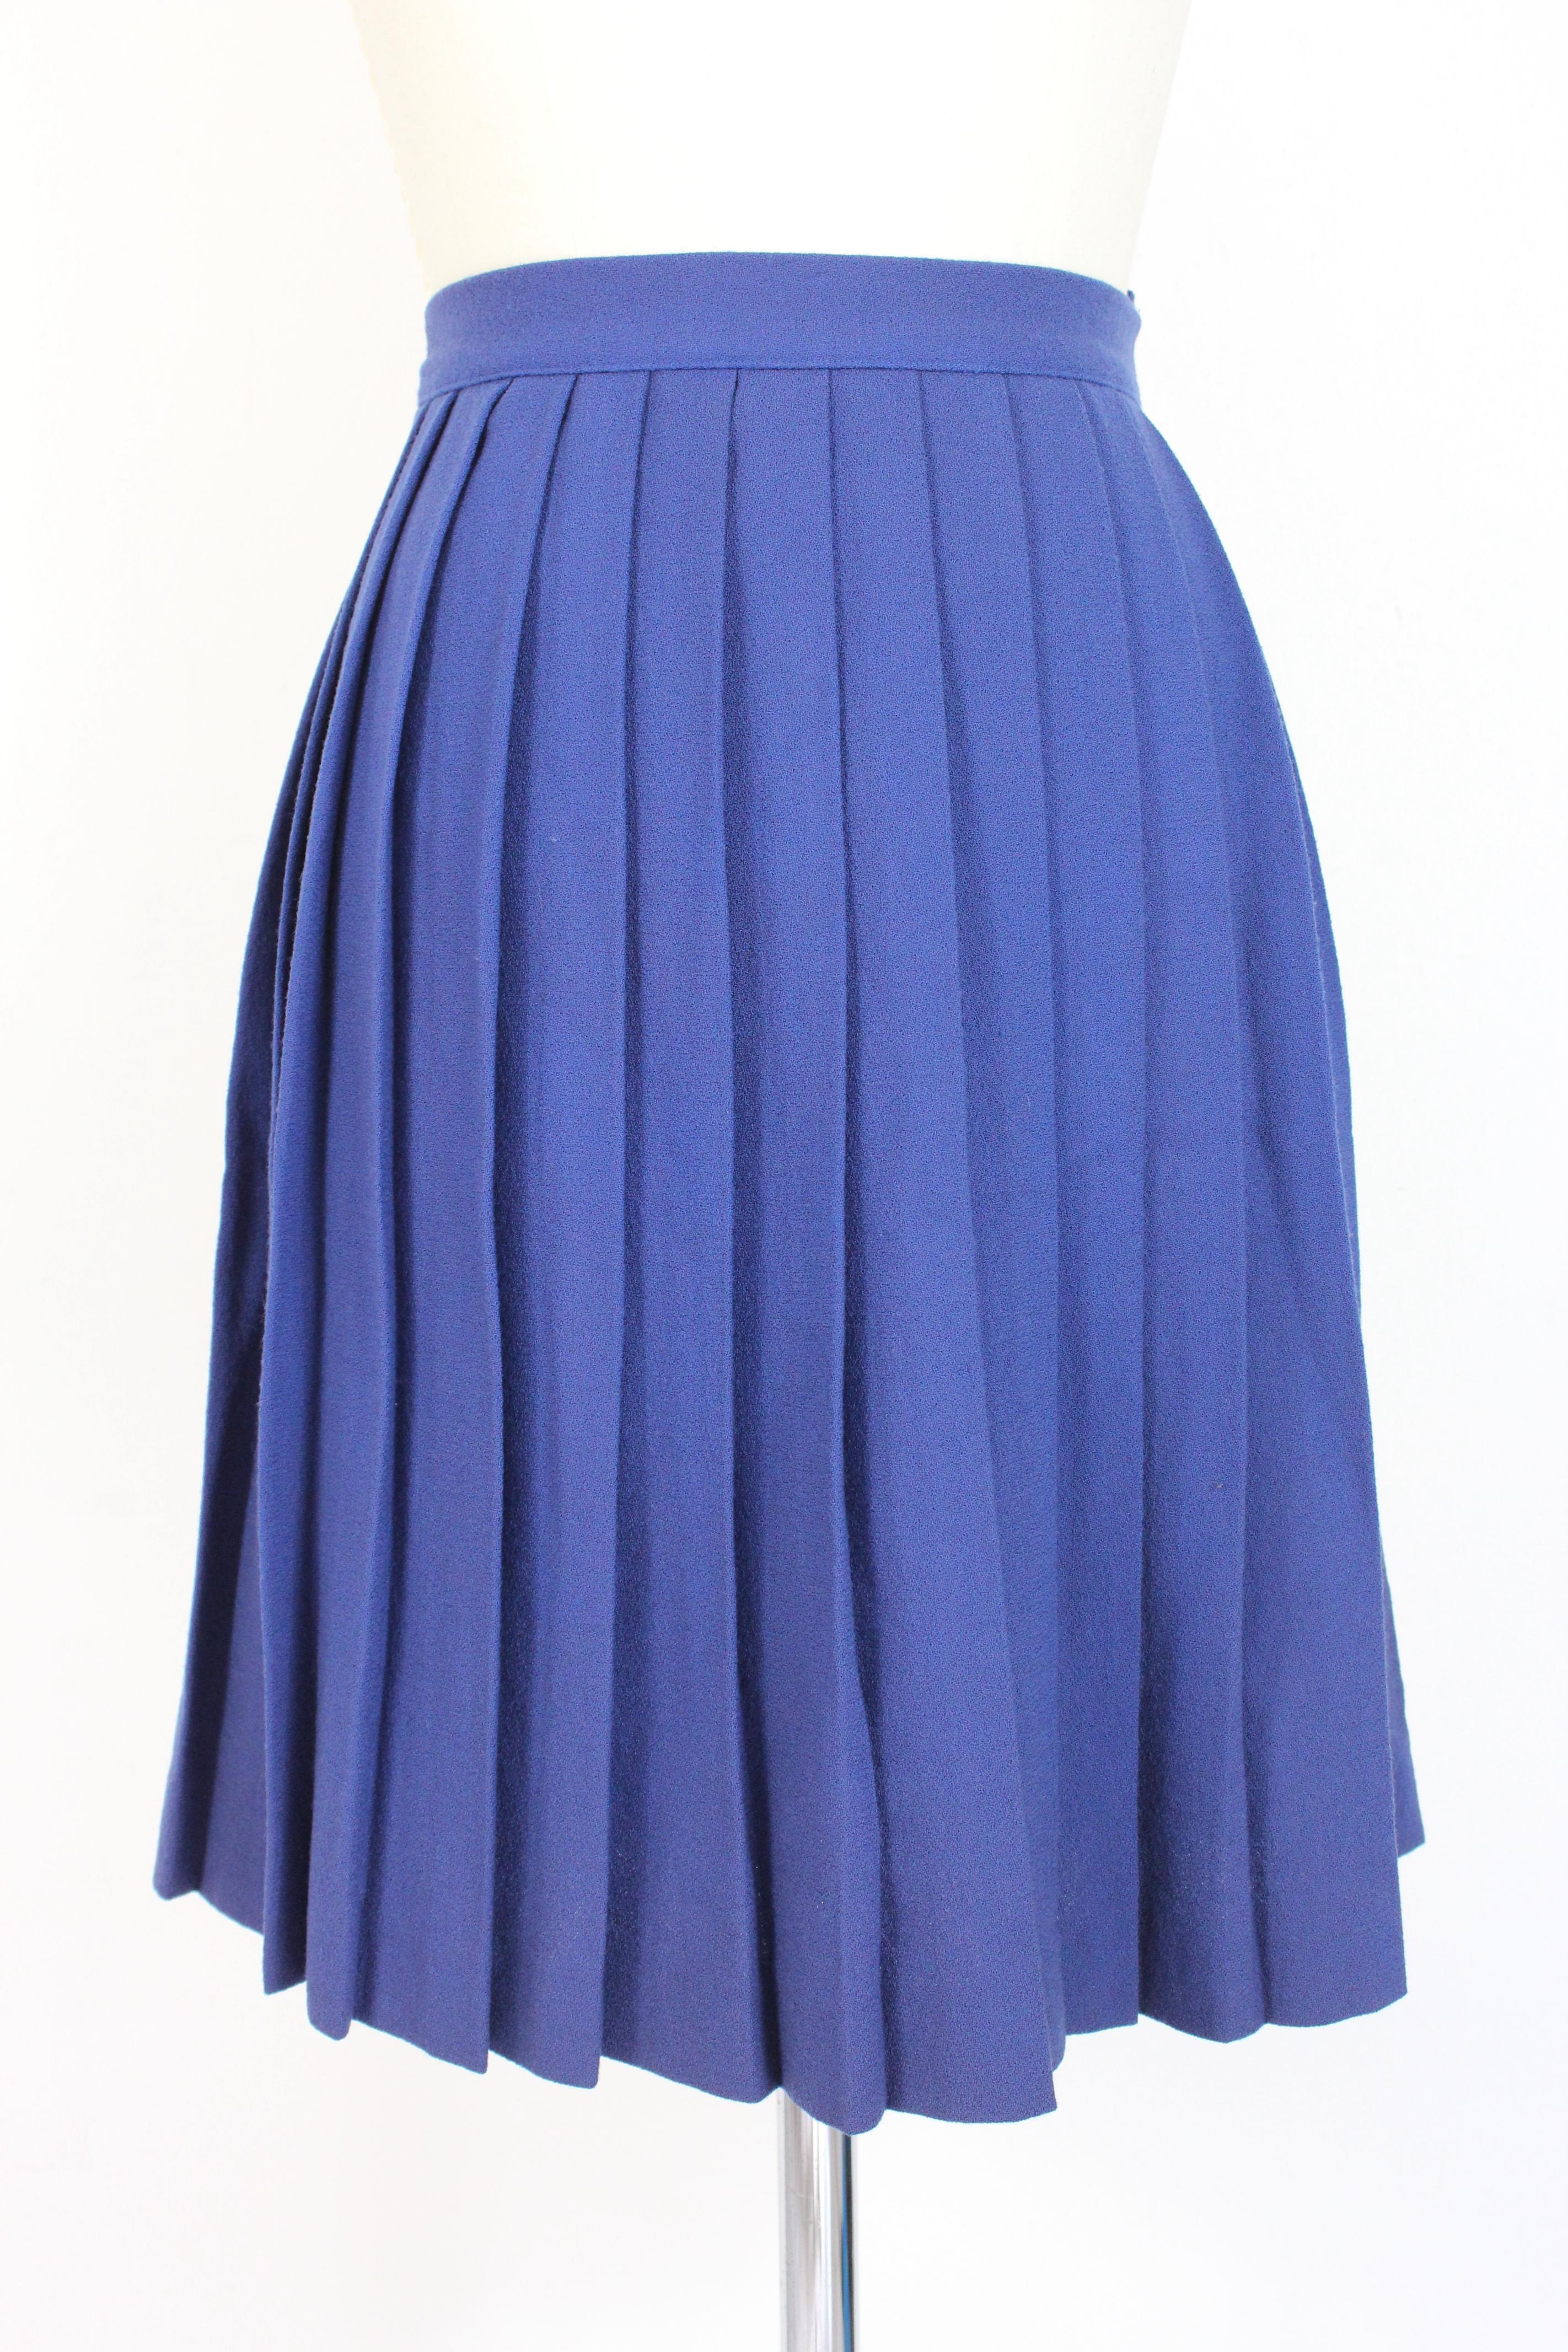 Oleg Cassini Blue Black Wool Pleated Evening Suit Skirt 1